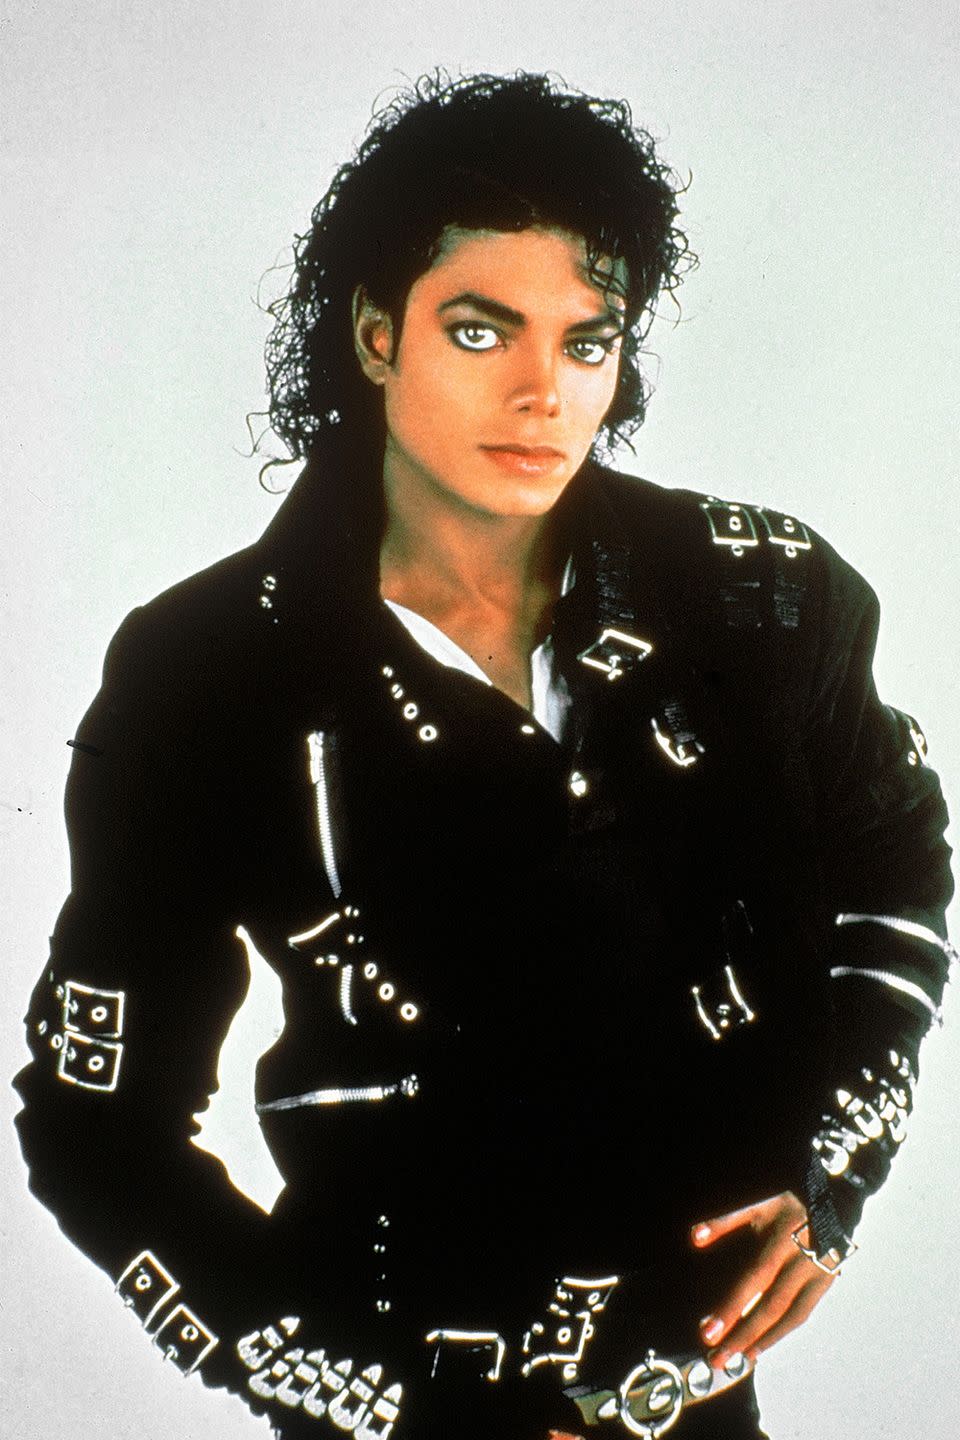 Michael Jackson killed, 2009